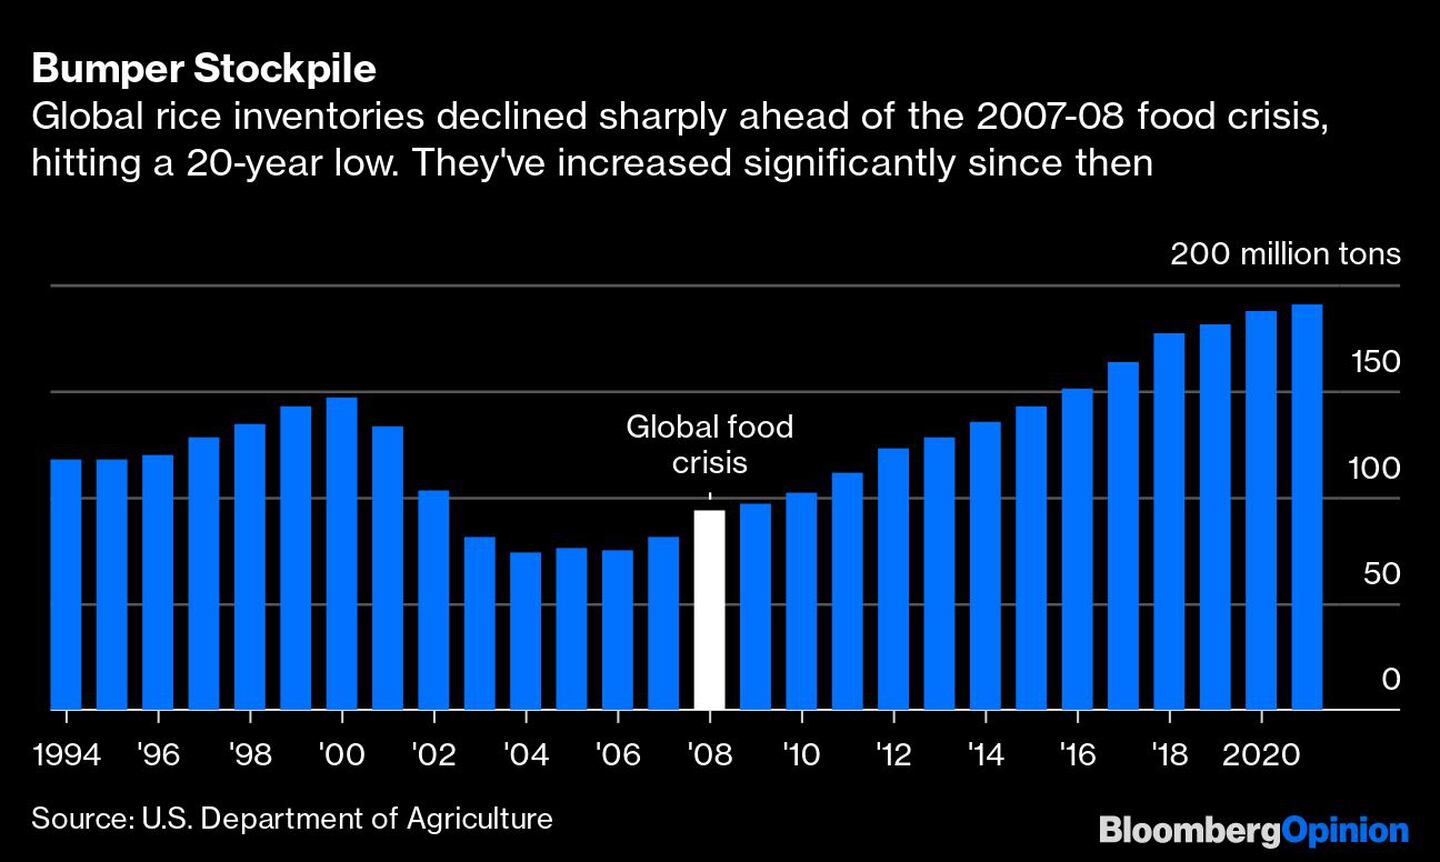 Los inventarios de arroz cayeron drásticamente previo a la crisis alimentaria de 2007-2008, pero se han incrementado de manera significativa desde entonces